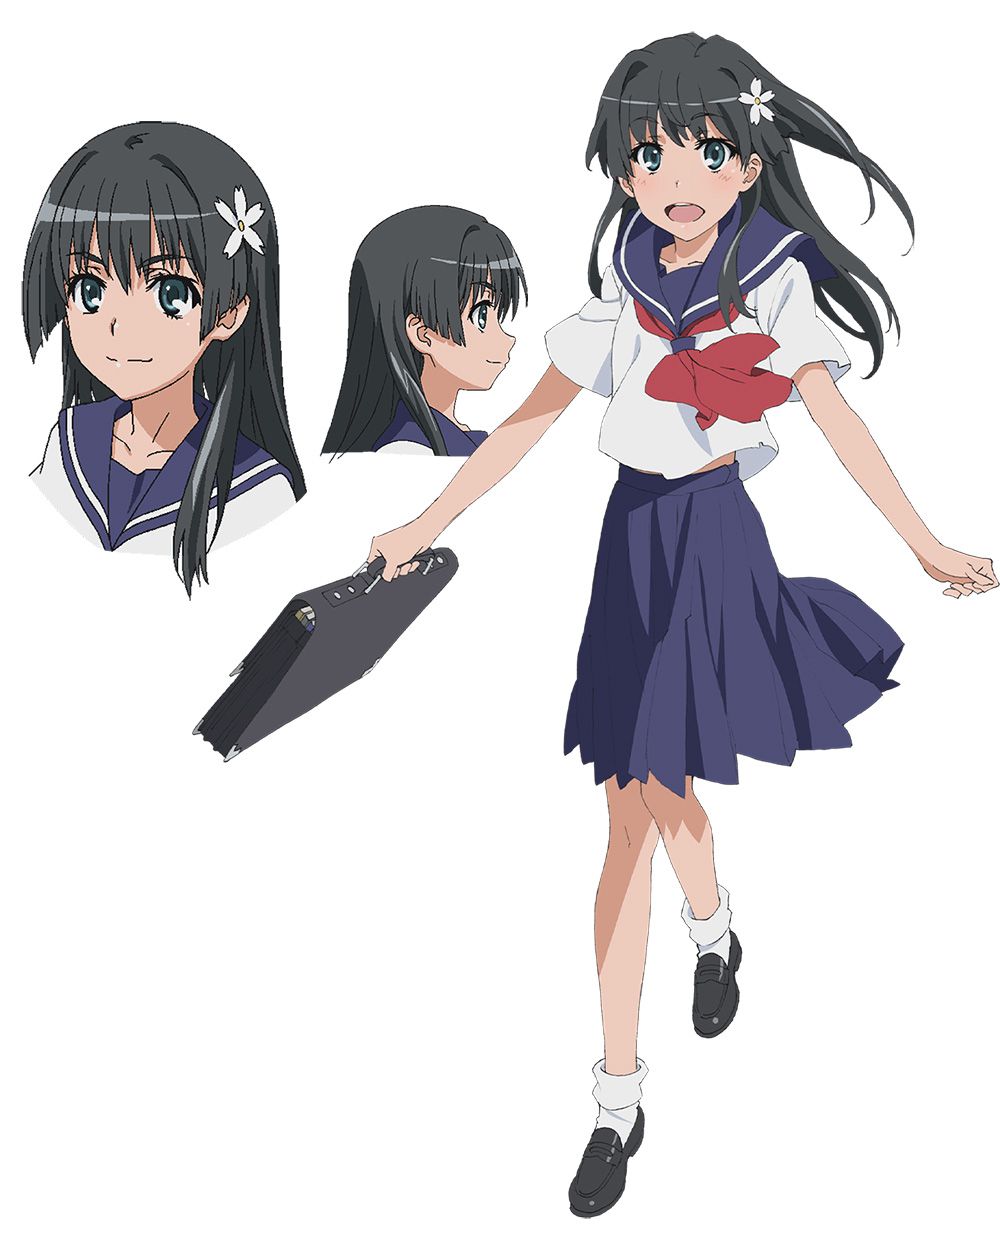 Toaru-Kagaku-no-Railgun-Season-3-Character-Designs-Ruiko-Saten